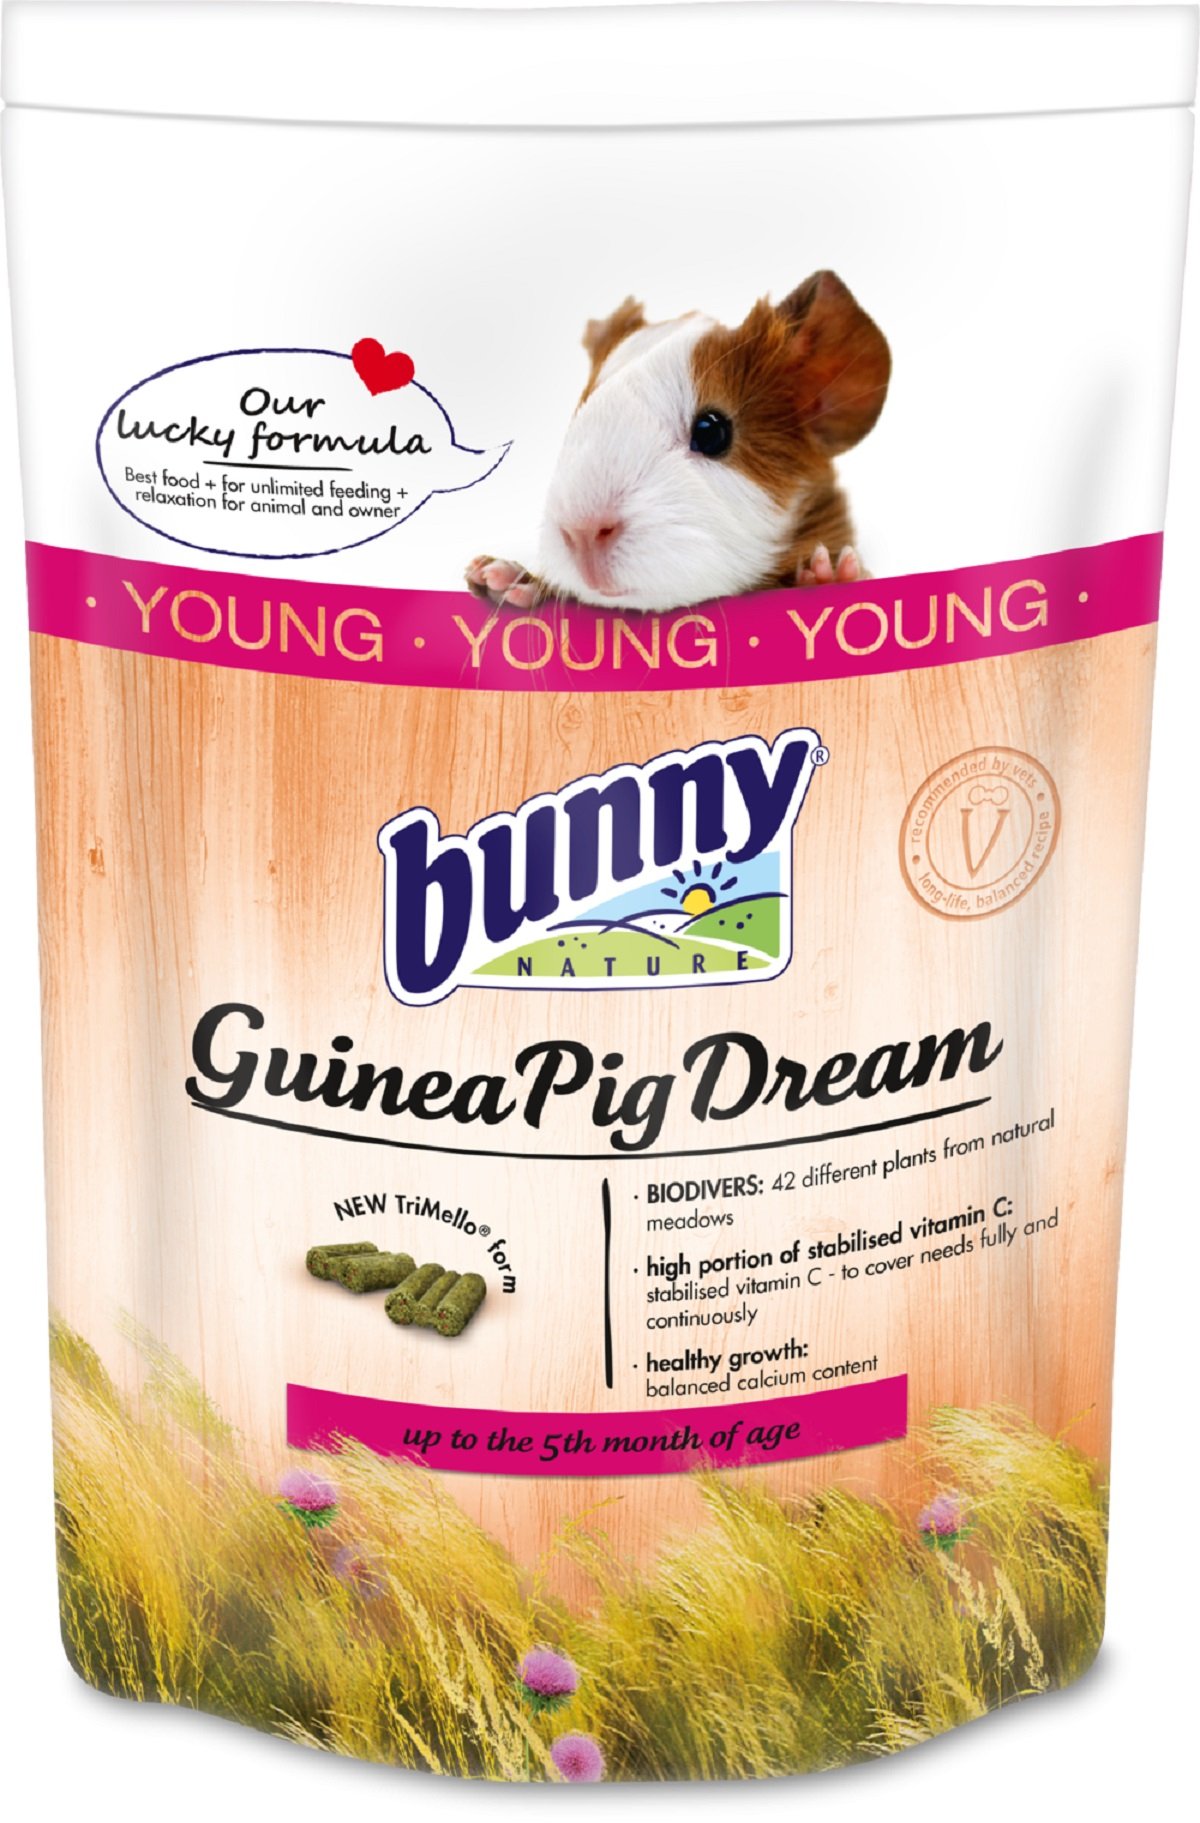 BUNNY GuineaPigDream Young Alleinfuttermittel für junge Meerschweinchen